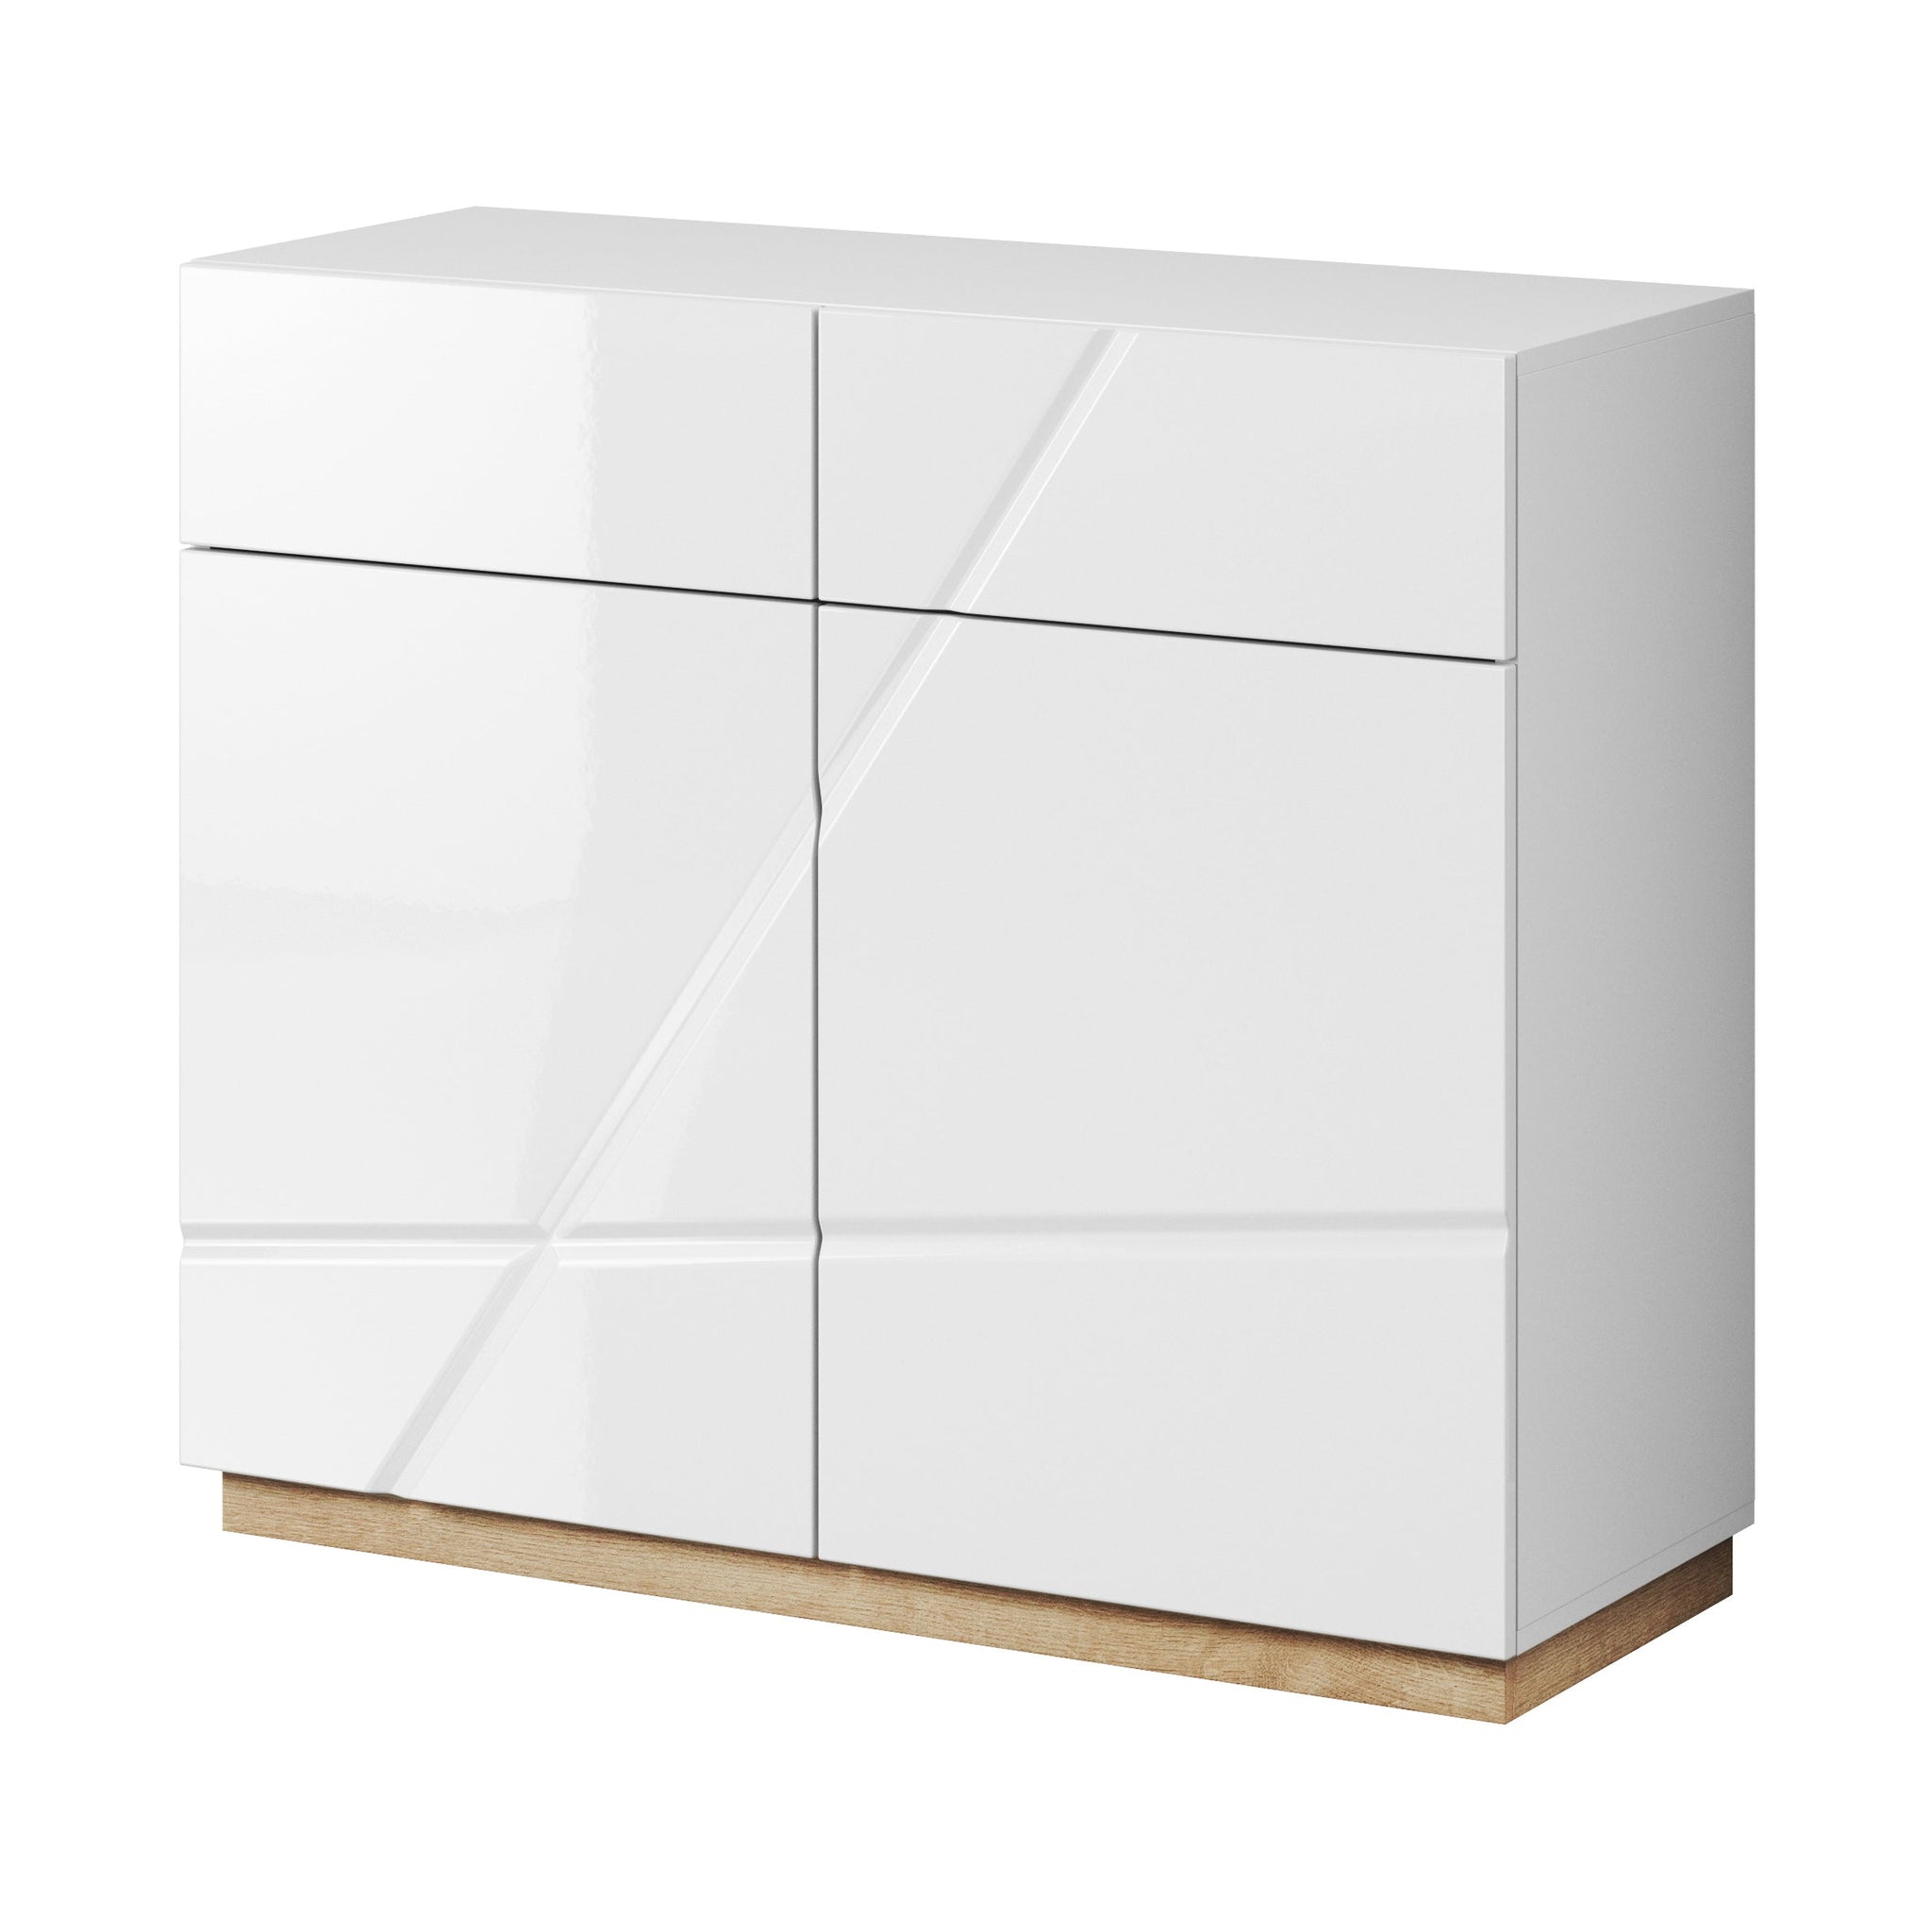 Futura FU-15 Sideboard Cabinet - £293.4 - Bedroom Sideboard Cabinet 